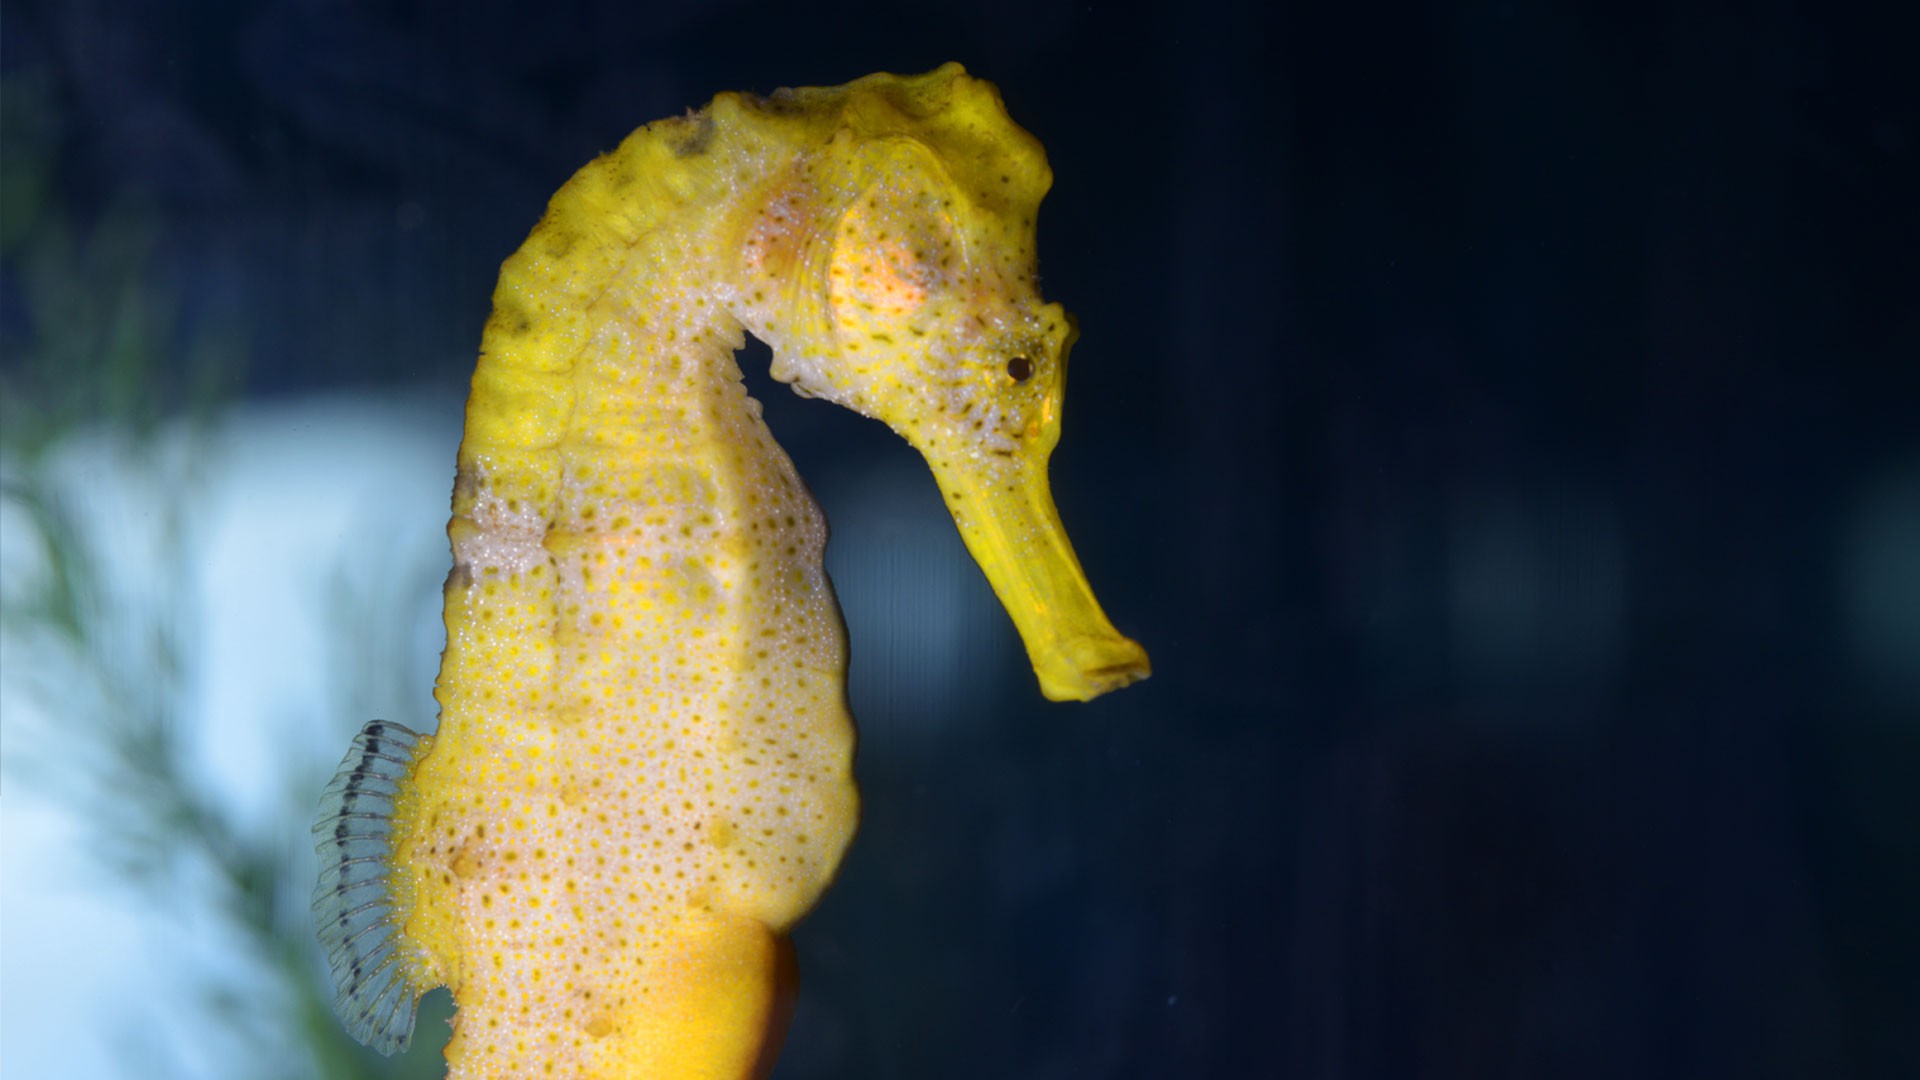 Longsnout seahorse